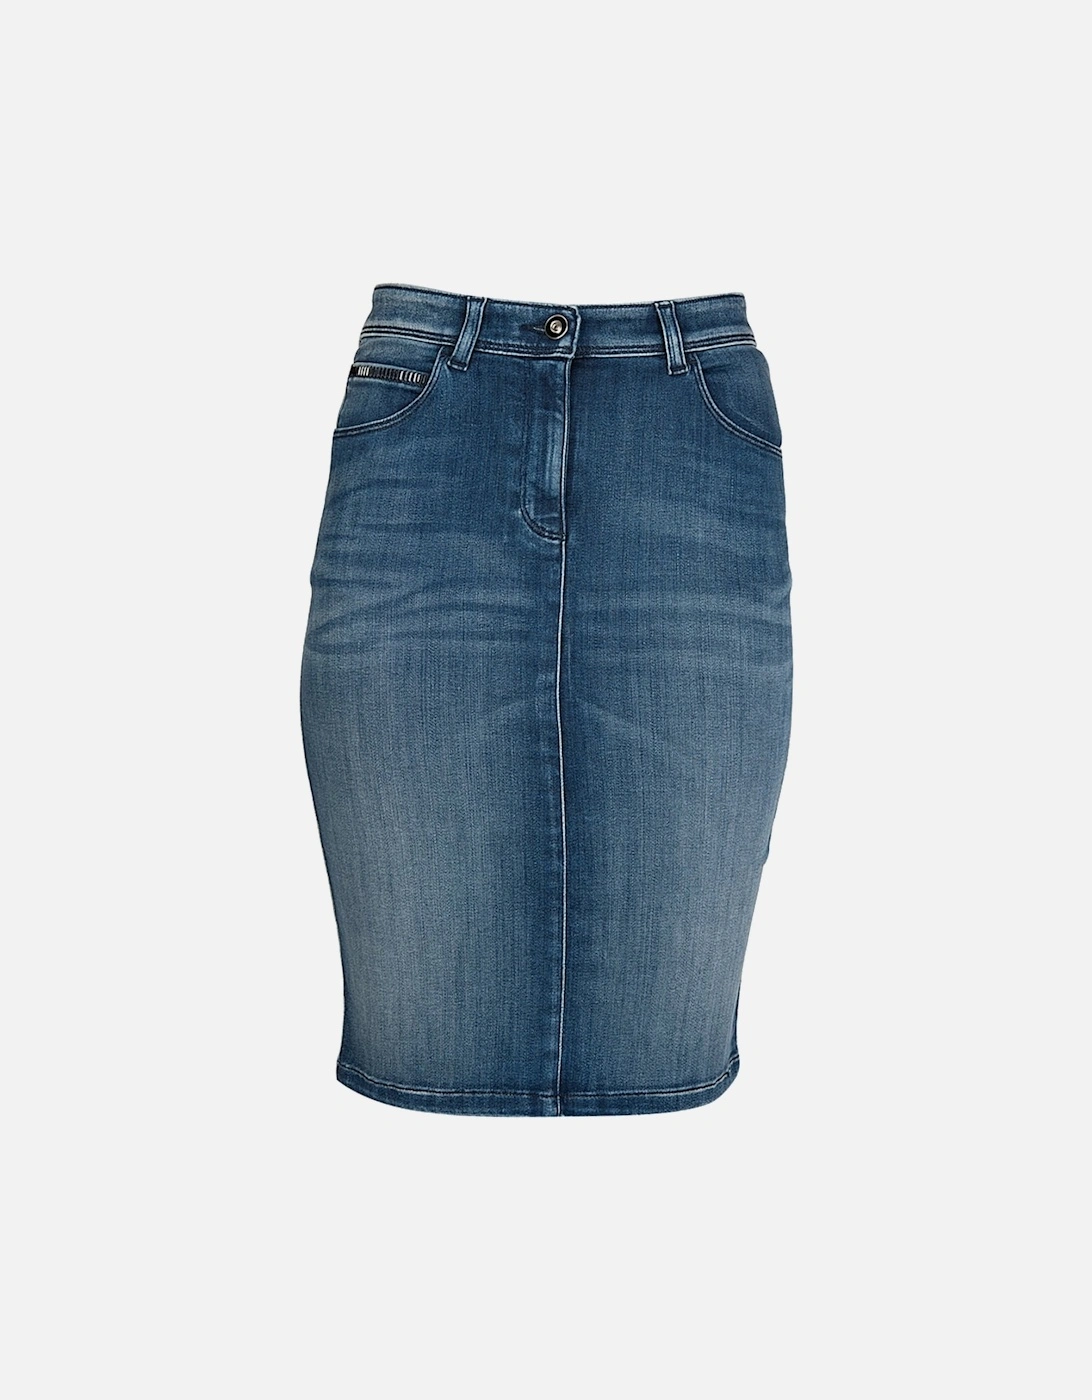 Jeans Women's Denim Midi Skirt Blue, 6 of 5